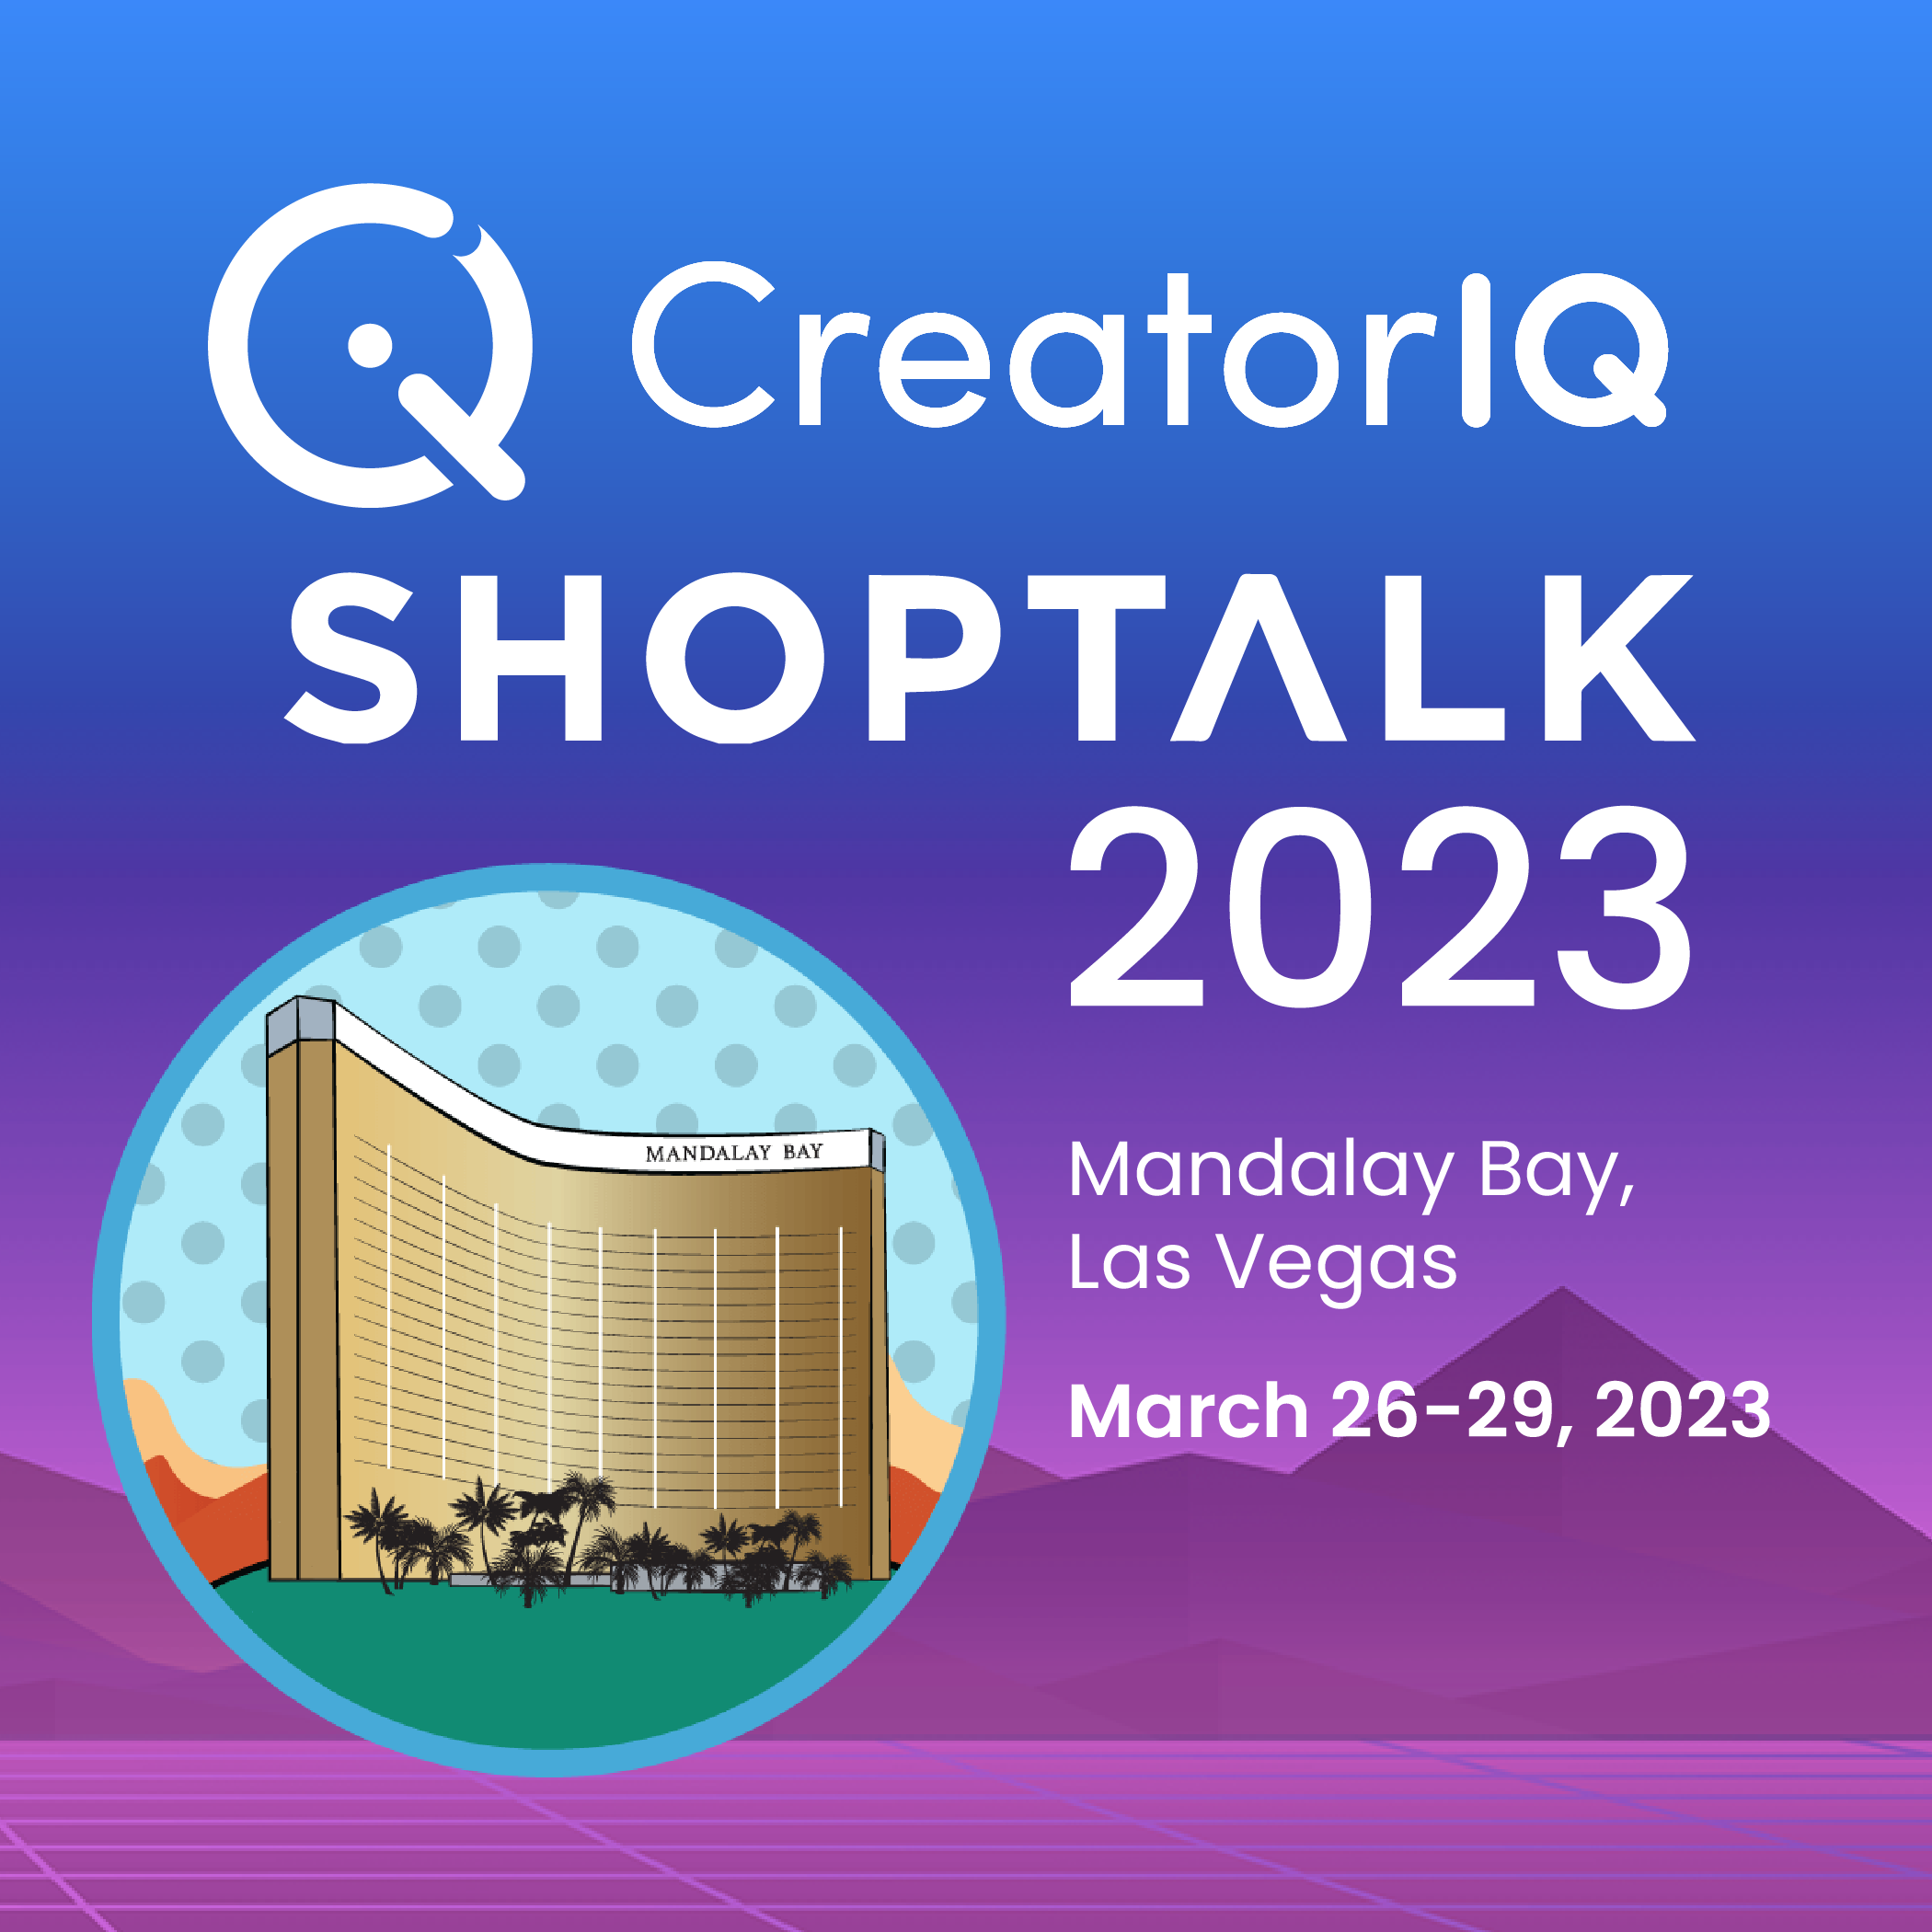 Shoptalk - March 26 -29, 2023